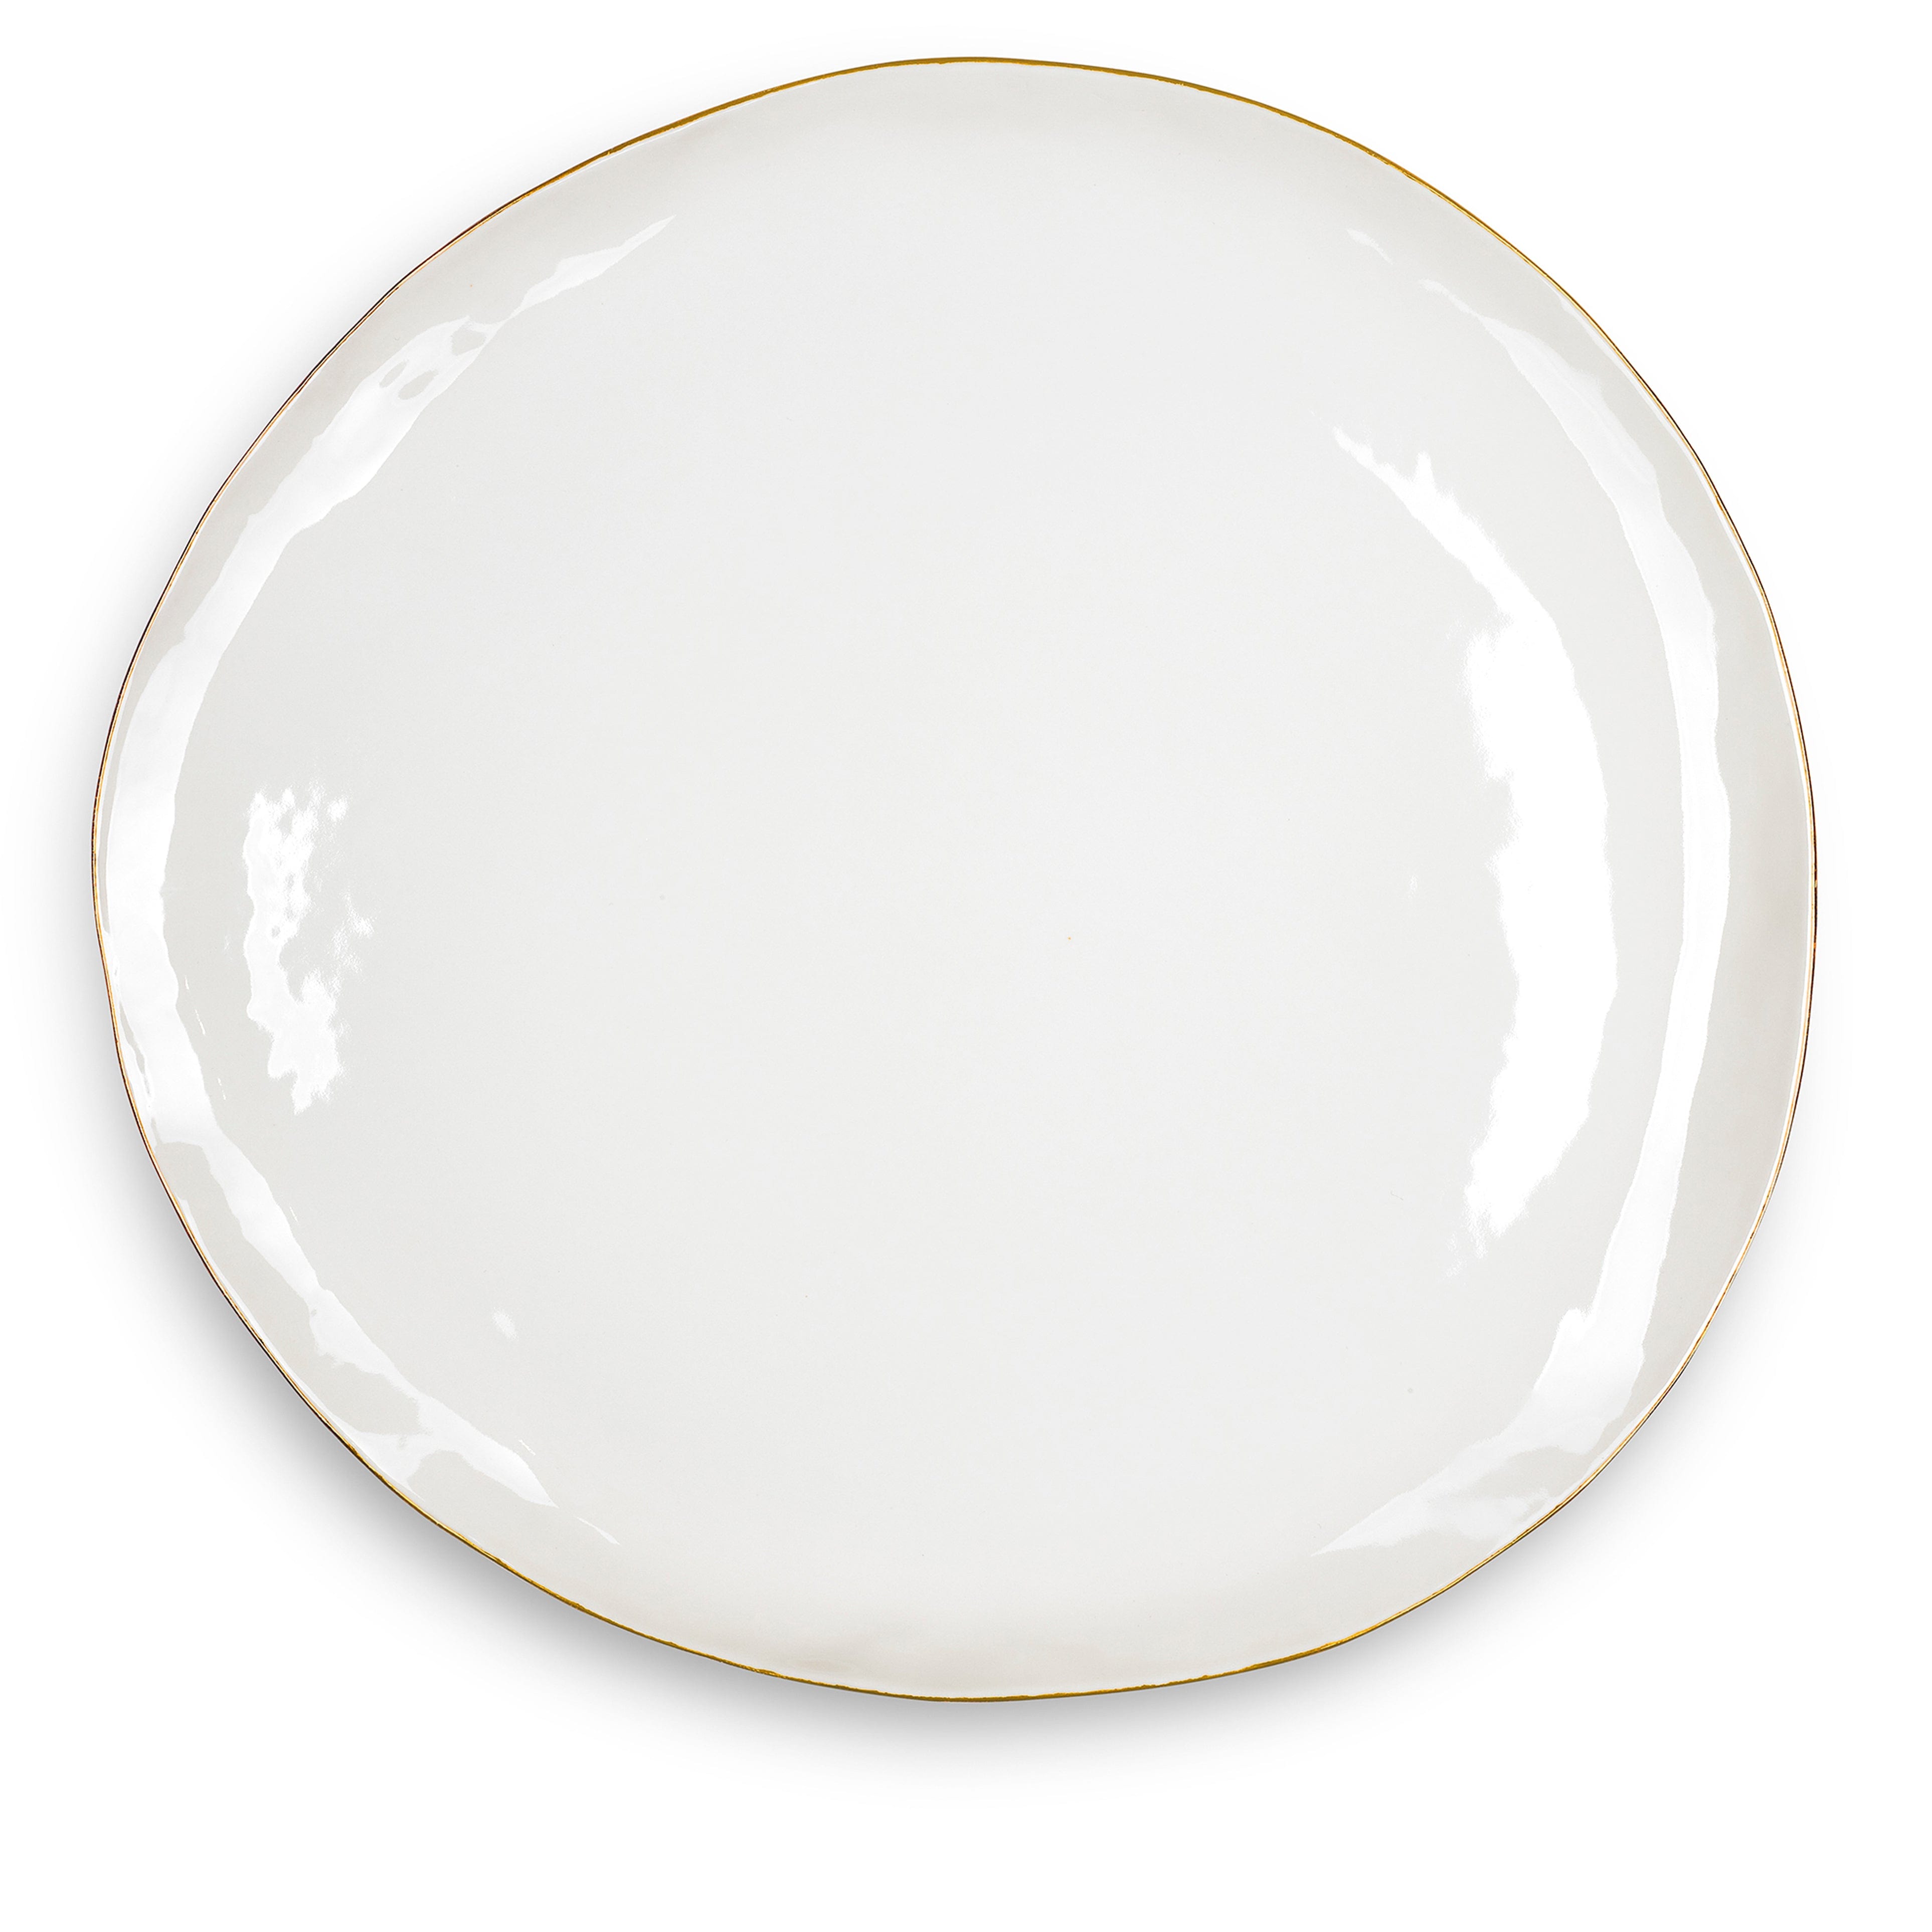 Summerill & Bishop Handmade 46cm Porcelain Extra Large Platter with Gold Rim